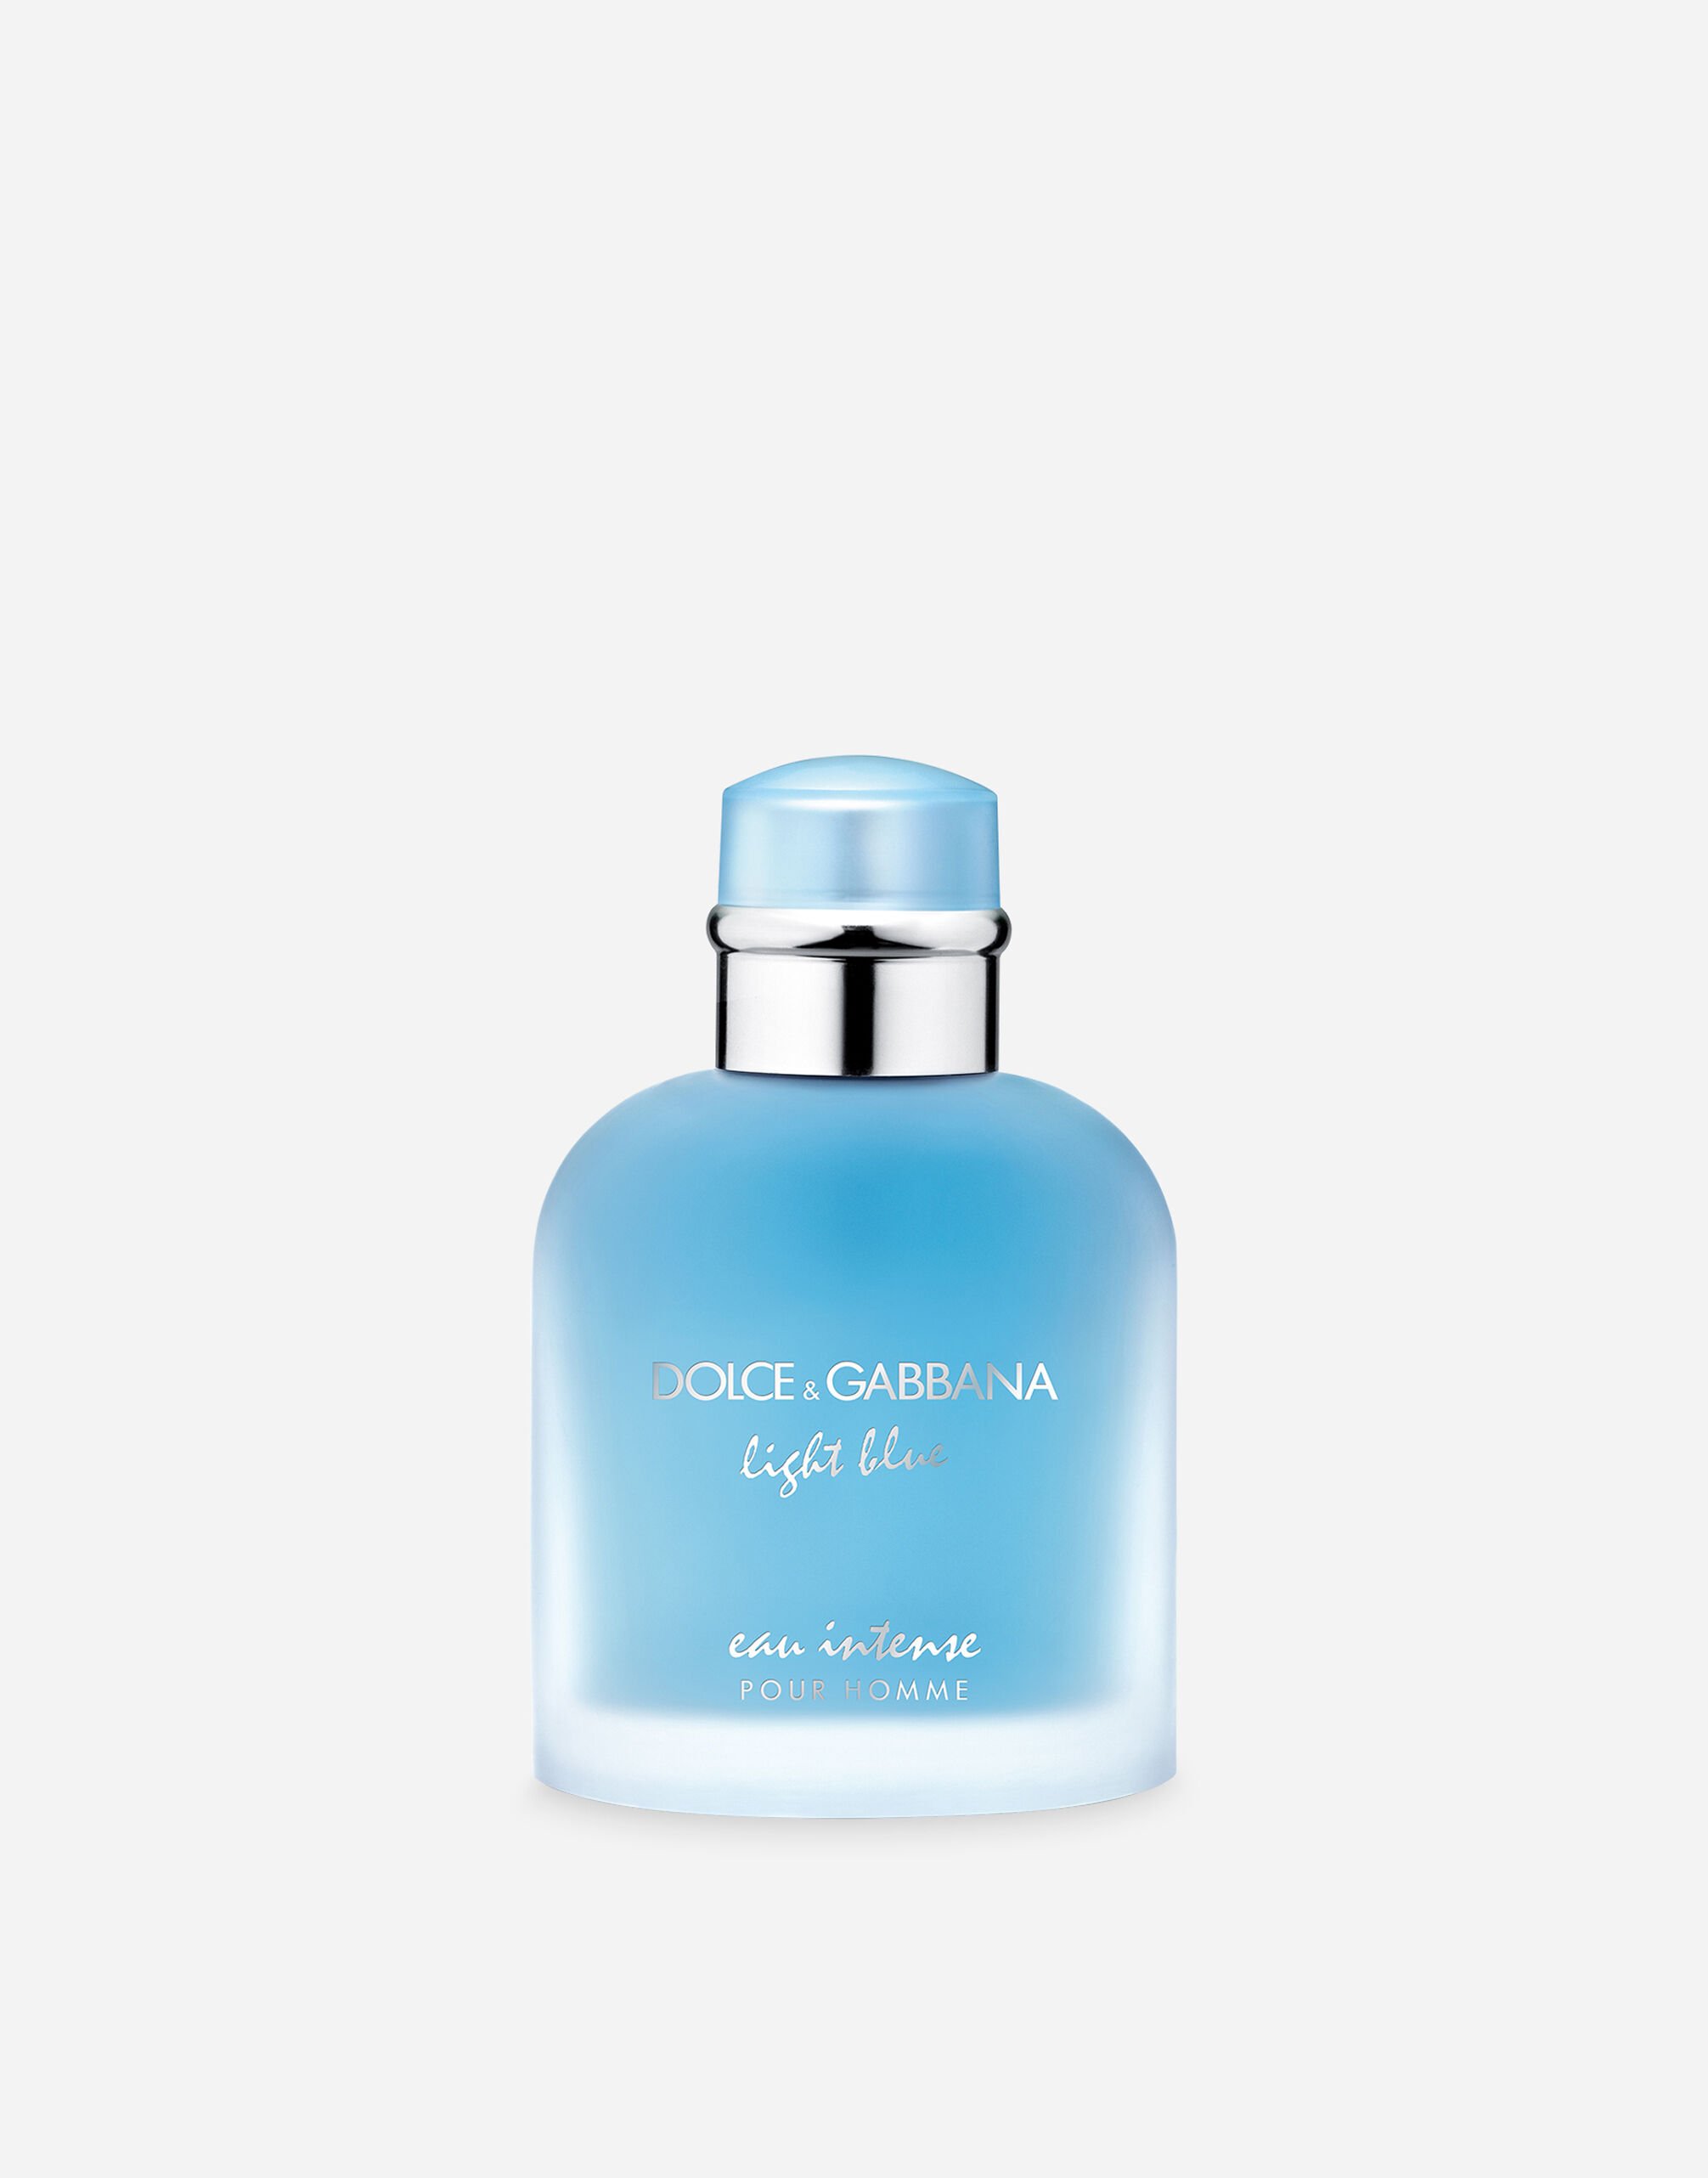 Dolce & Gabbana Light Blue Pour Homme Eau de Parfum Intense - VP1772VP105